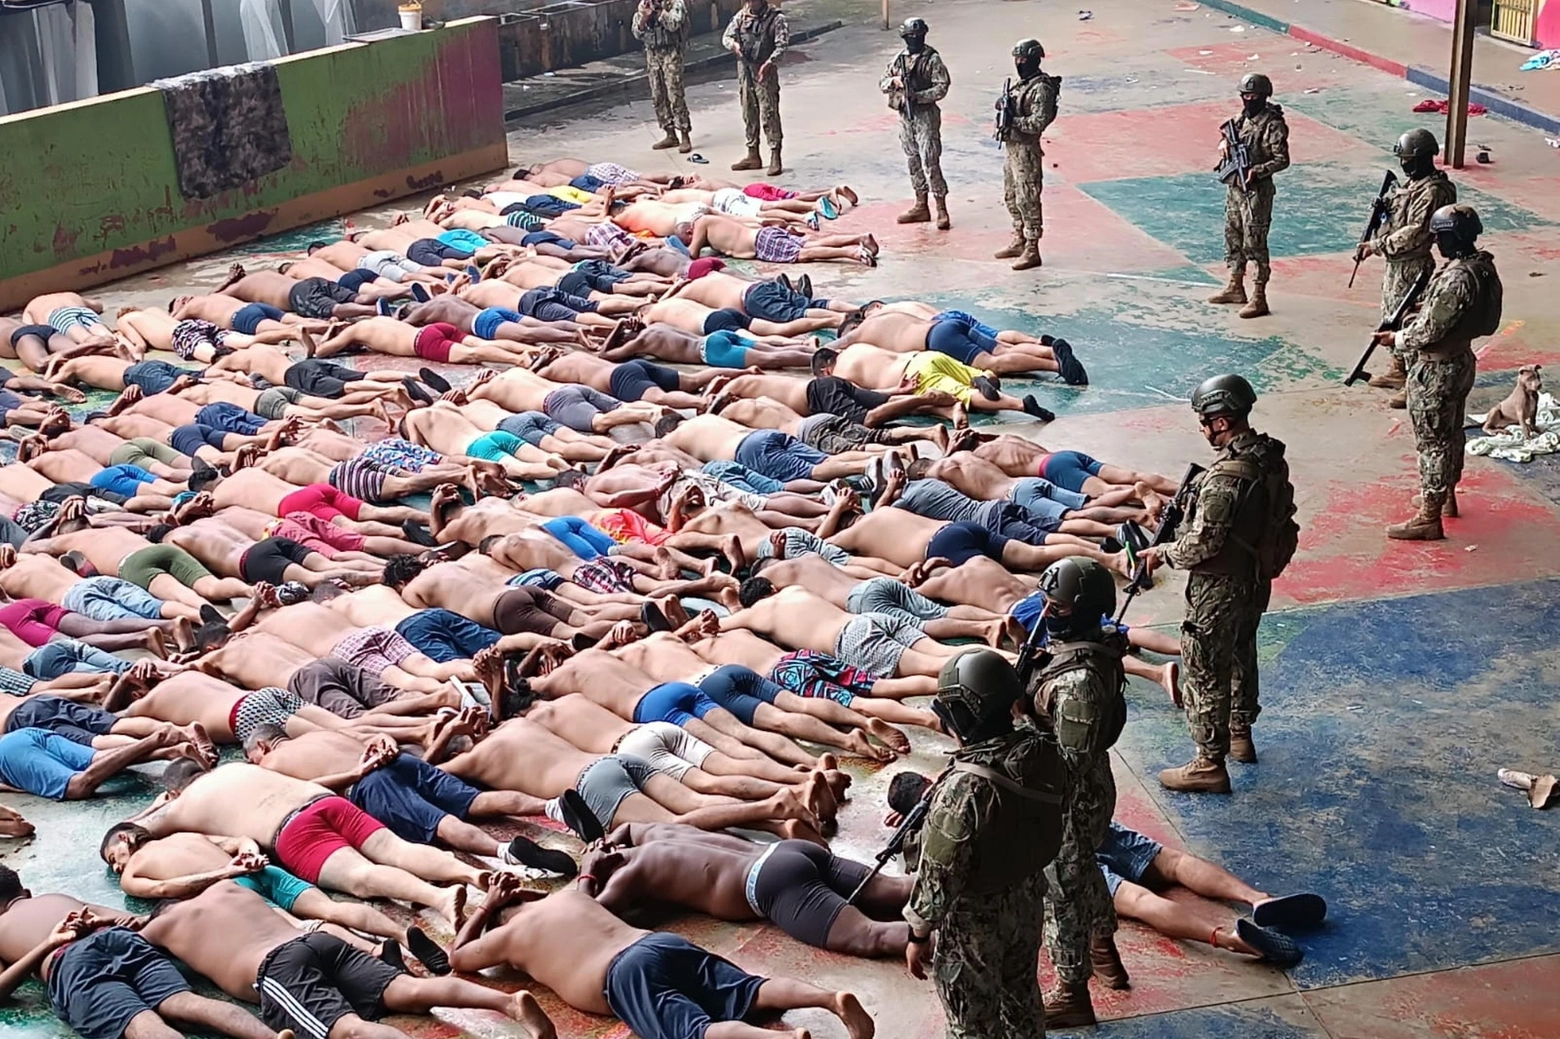 L'intervento dei militari nella prigione di Guayaquil